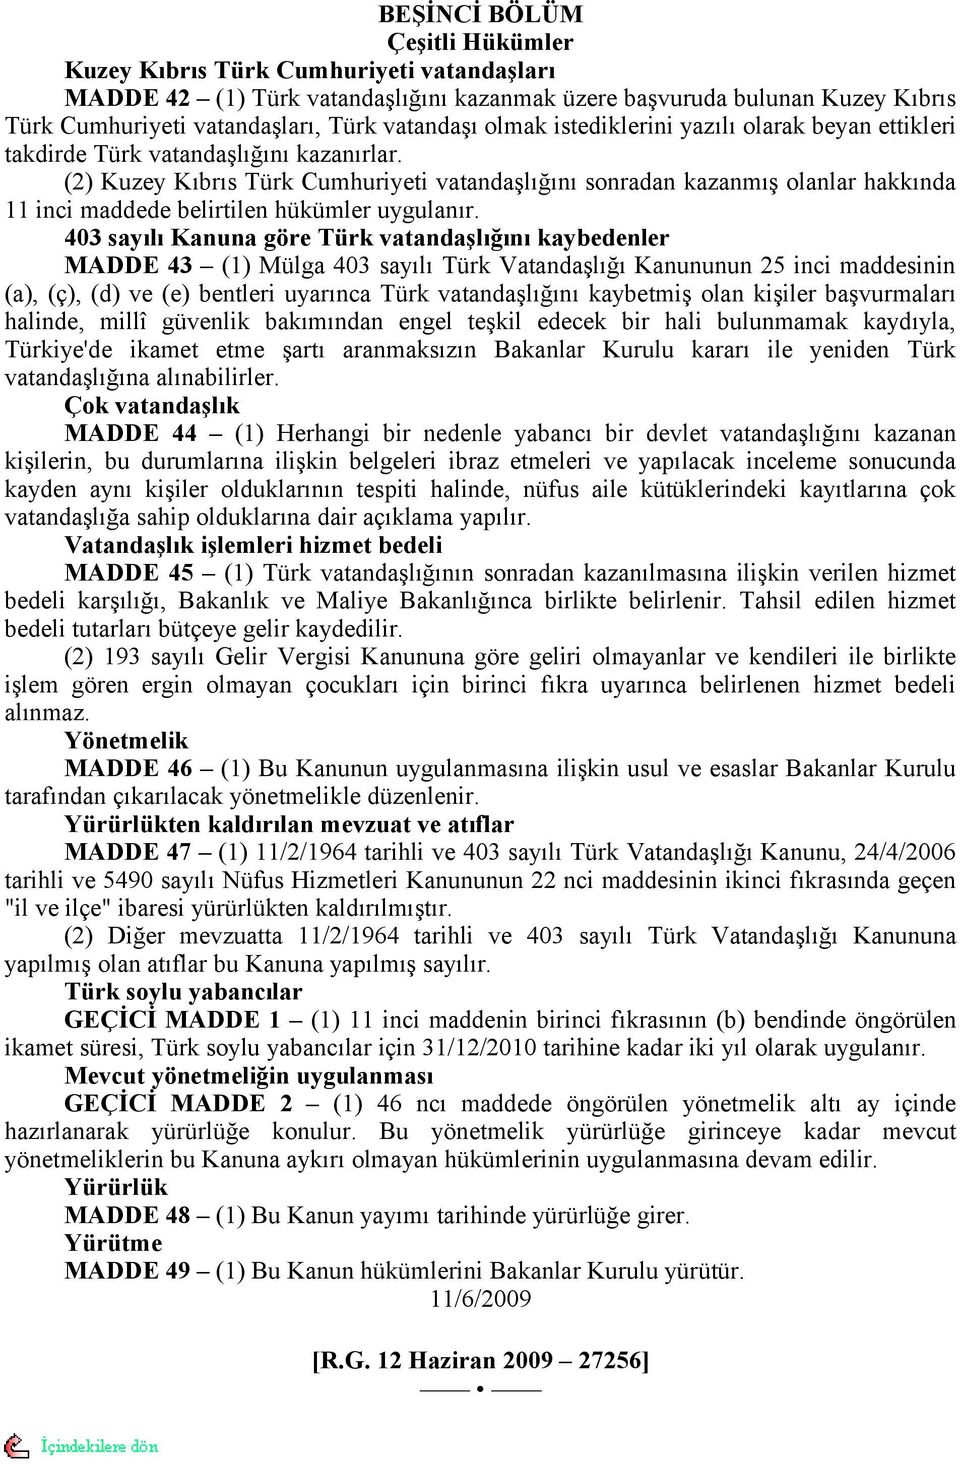 (2) Kuzey Kıbrıs Türk Cumhuriyeti vatandaşlığını sonradan kazanmış olanlar hakkında 11 inci maddede belirtilen hükümler uygulanır.